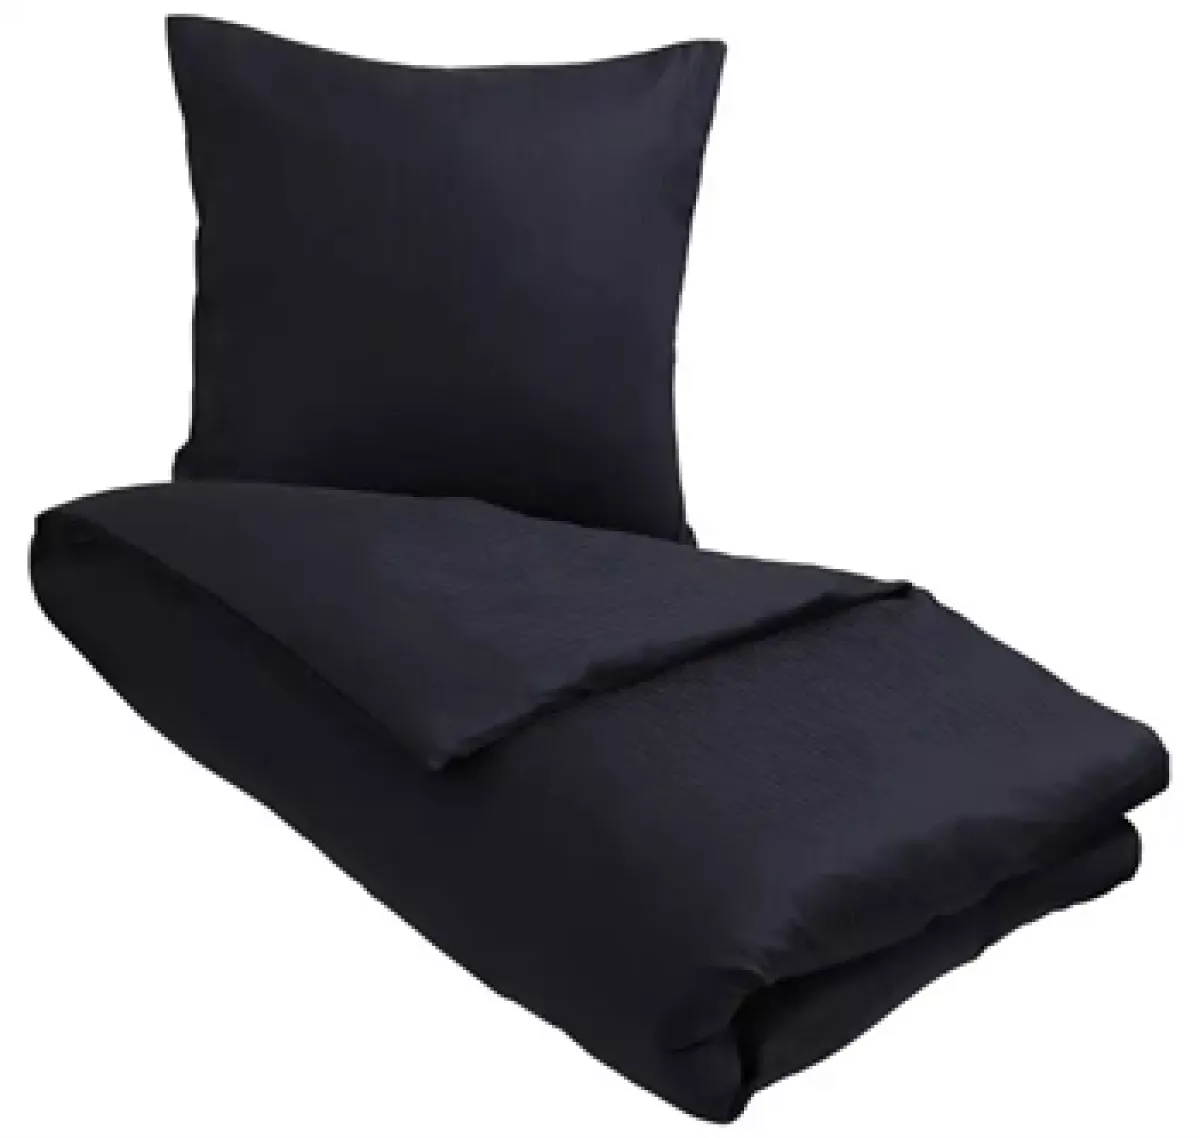 #3 - Egyptisk bomuld sengetøj - 140x200 cm - Mørke blåt sengetøj - Ekstra blødt sengesæt fra By Borg